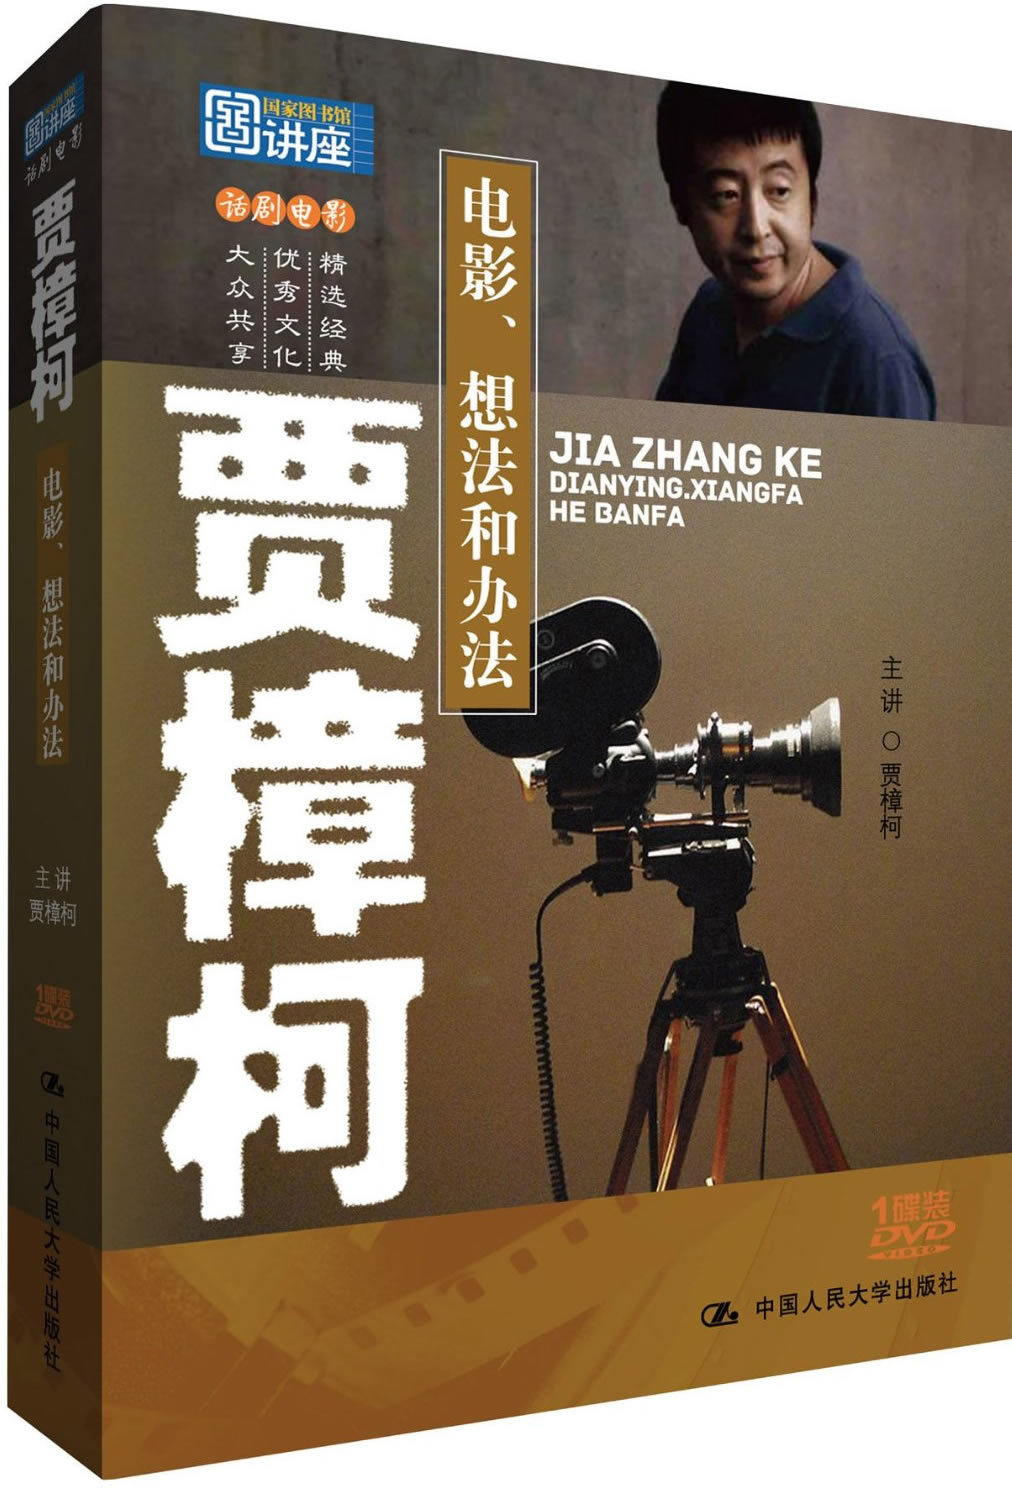 国家图书馆讲座系列:贾樟柯 - 电影、想法和办法<br>ISBN:978-7-88702-941-6, 9787887029416